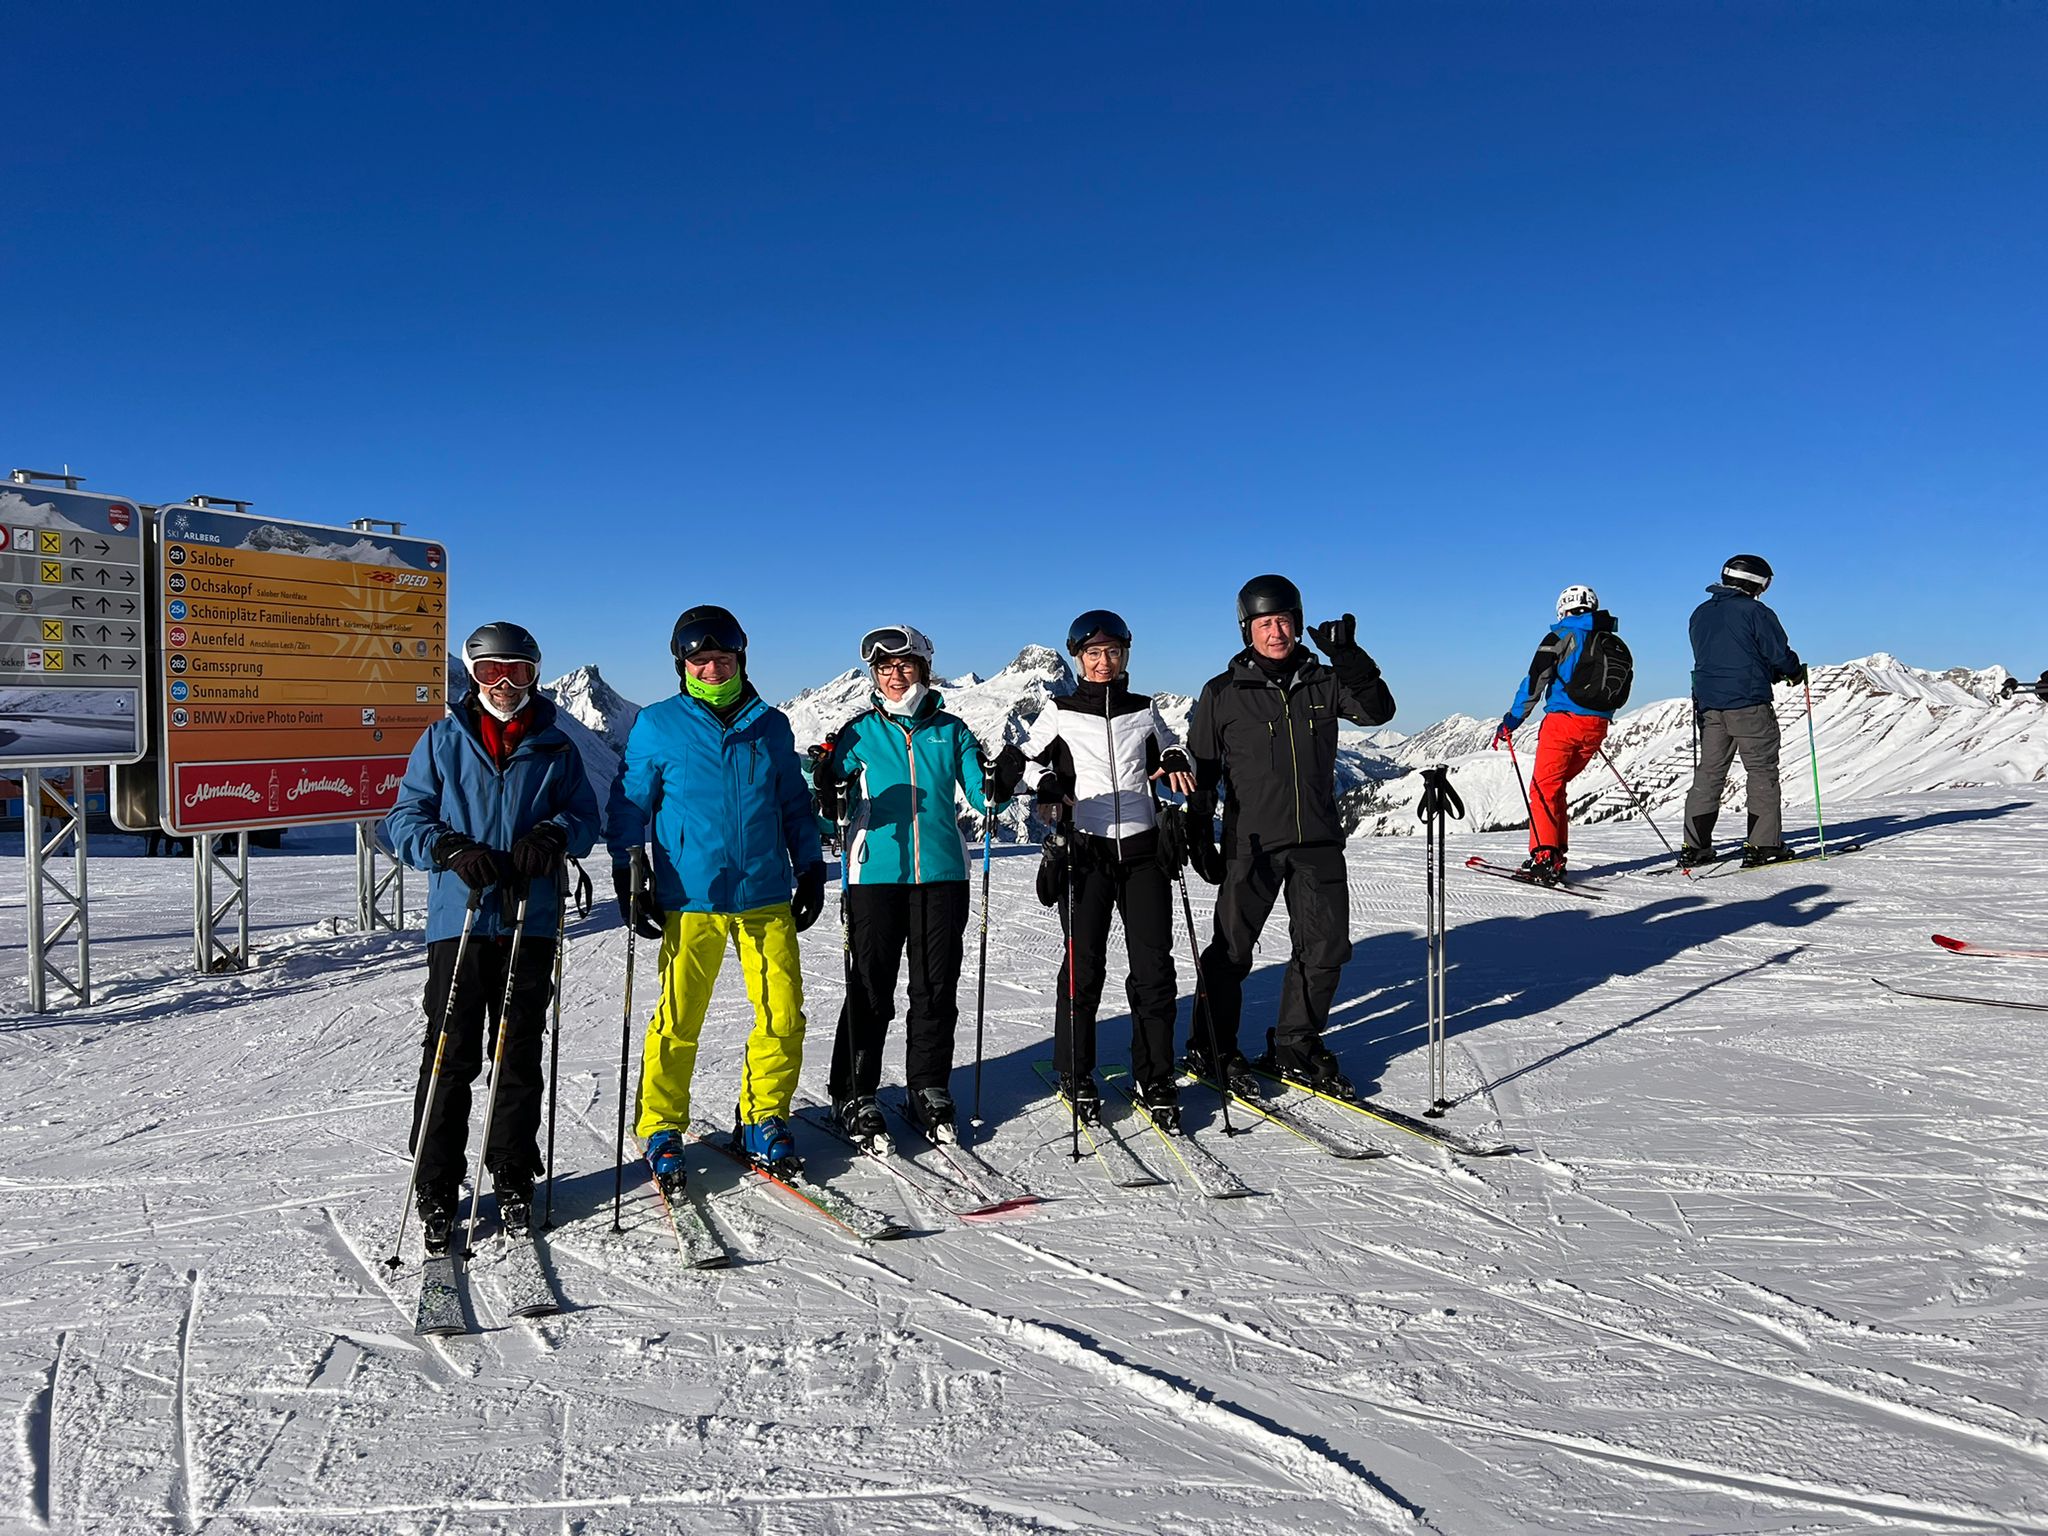 Gruppe auf Skis